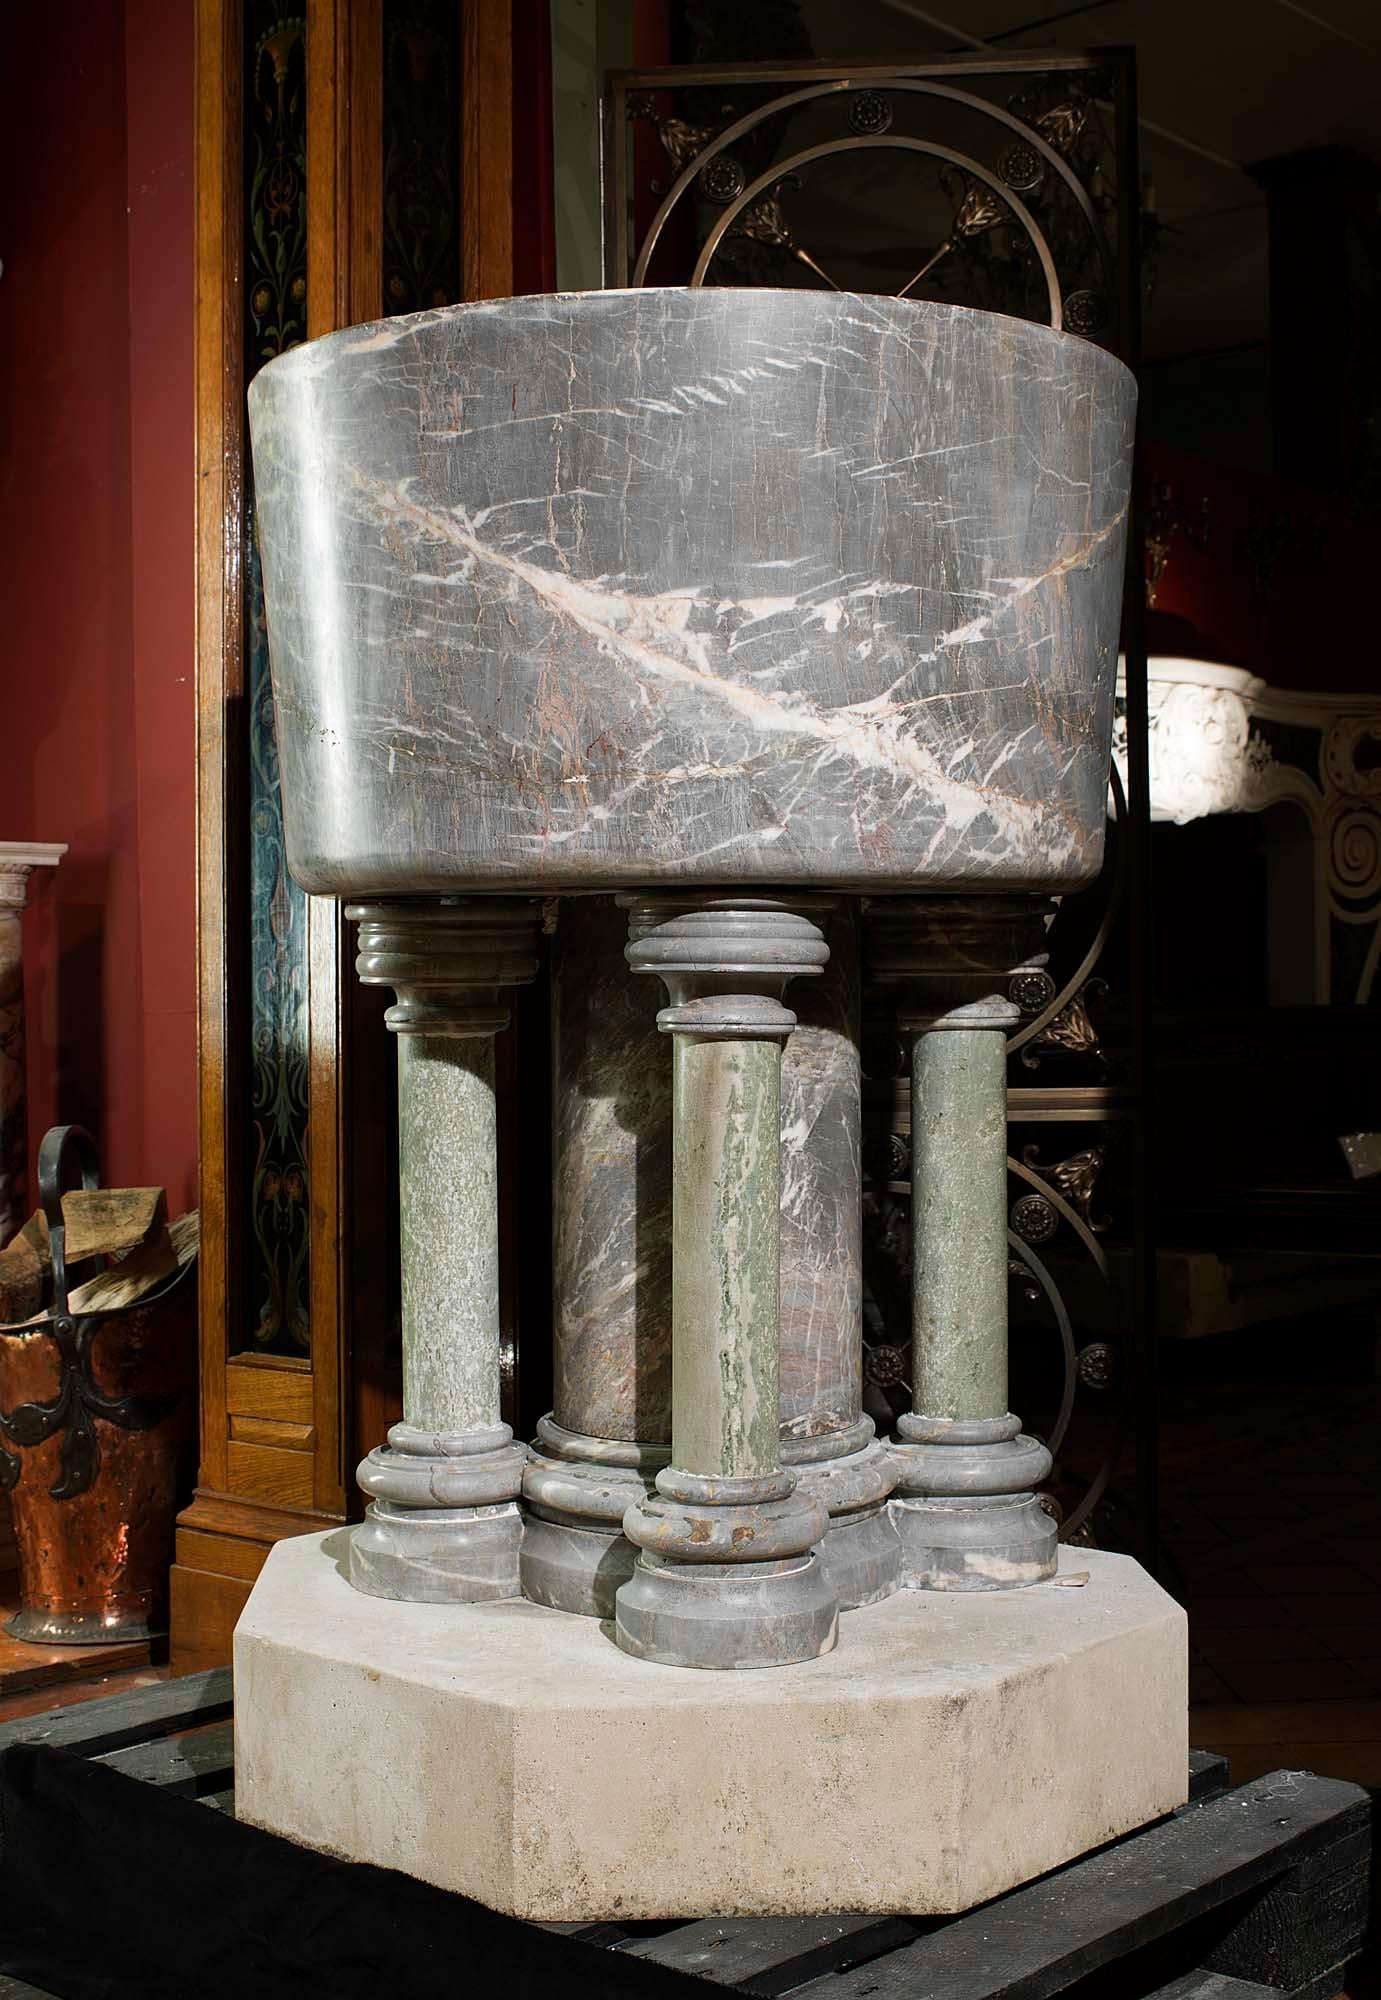 Des fonts baptismaux impressionnants et de grande taille, entièrement sculptés dans du marbre d'Ashburton. Il s'agit d'un marbre gris doux et rose chair, légèrement veiné, qui présente des traces de restes fossiles de créatures, principalement des